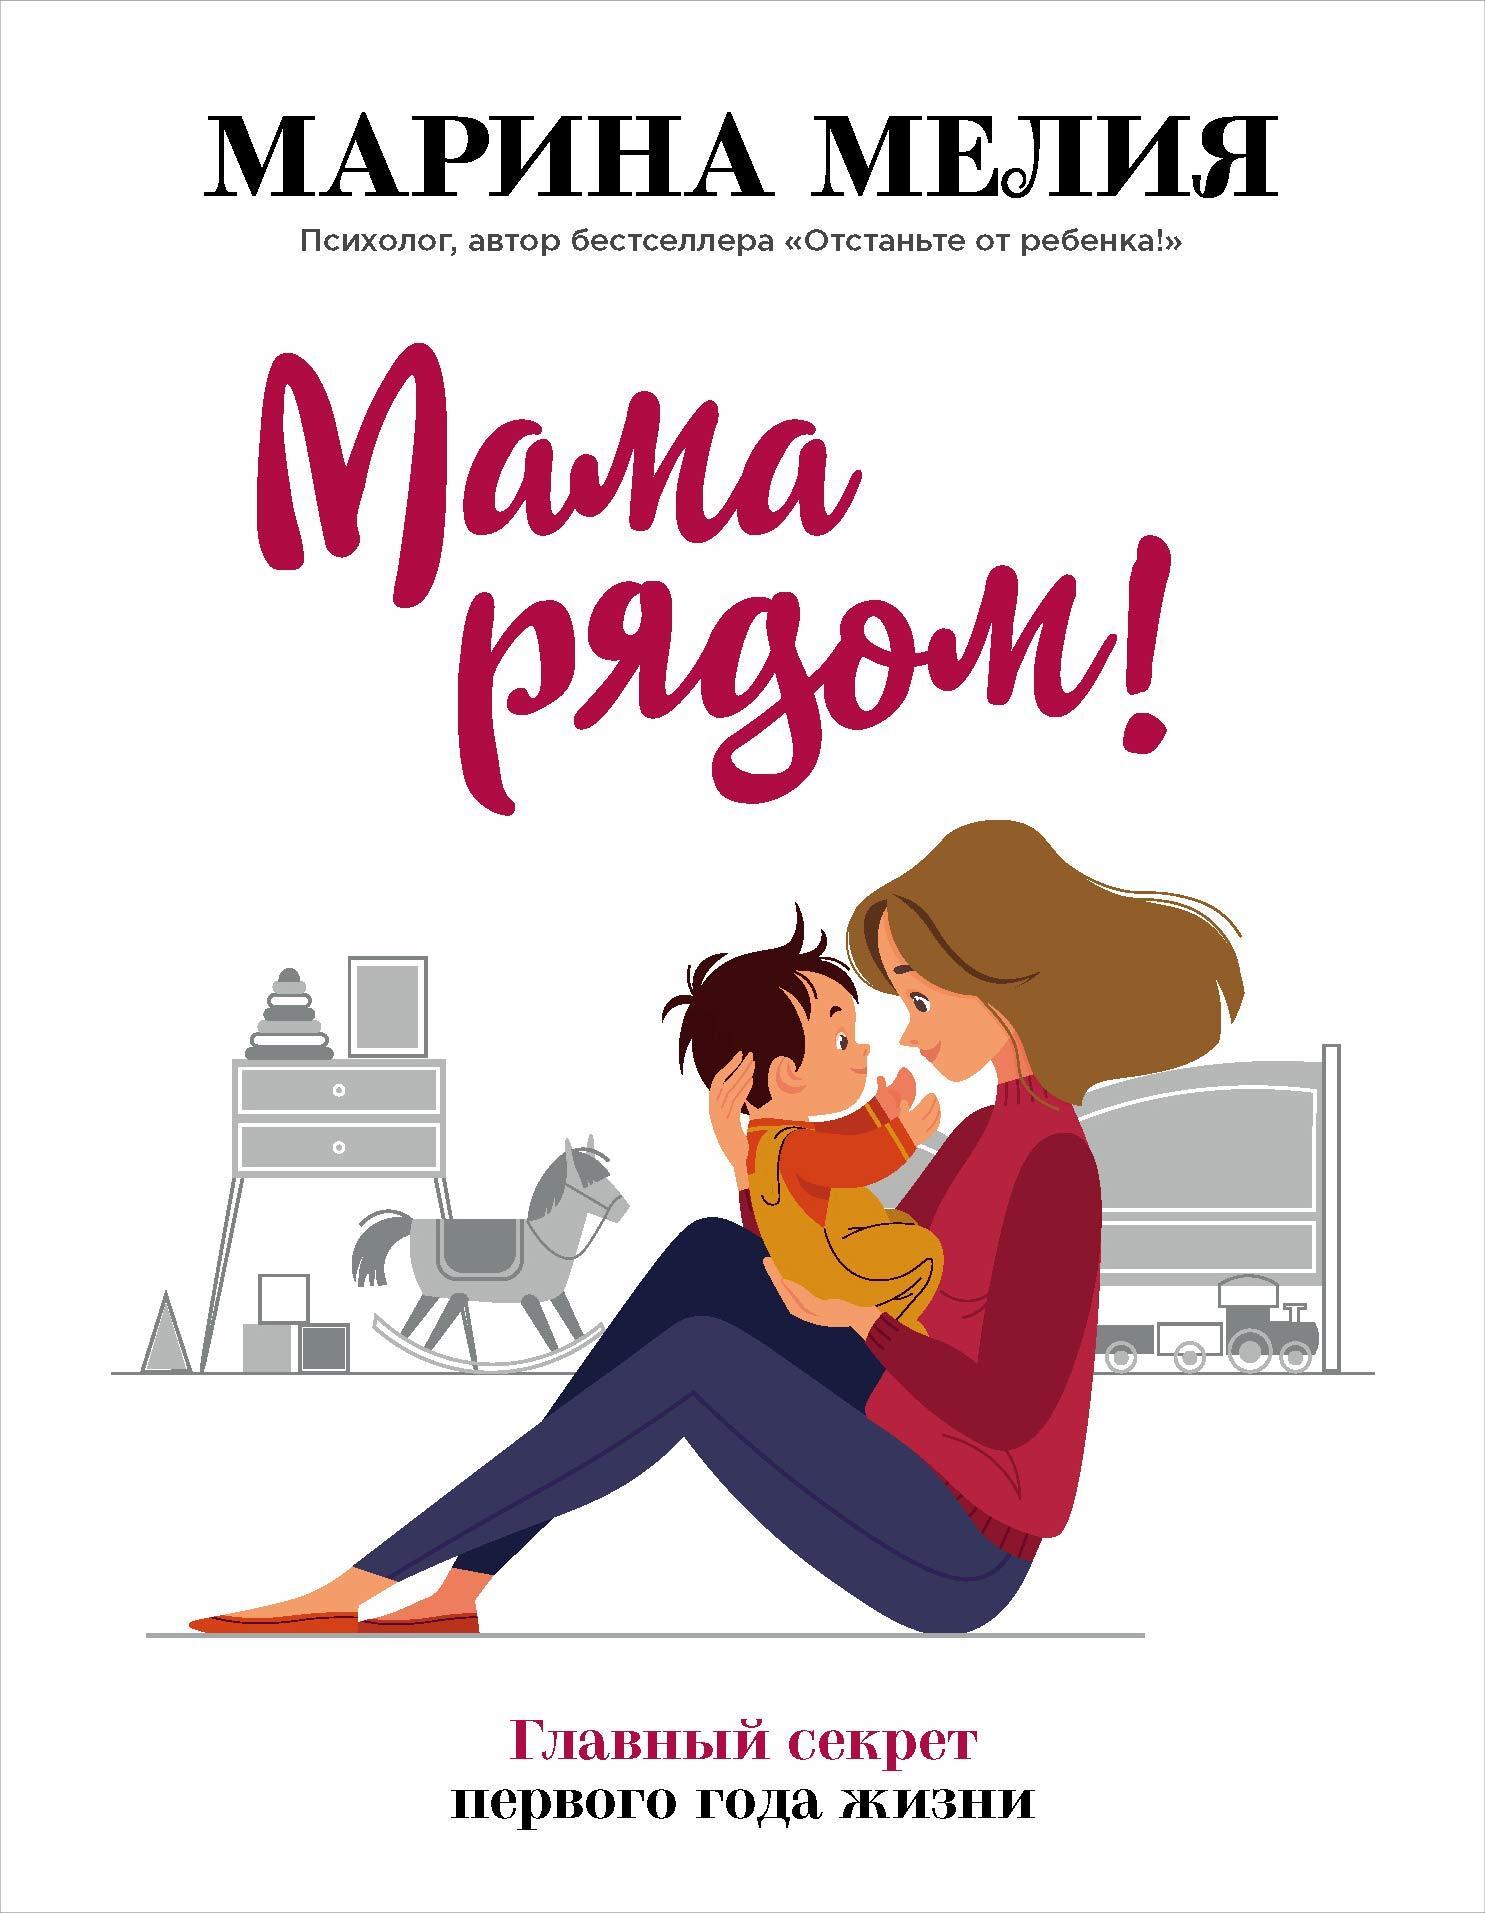 Мама рядом! Главный секрет первого года жизни, Марина Мелия – скачать книгу  fb2, epub, pdf на ЛитРес